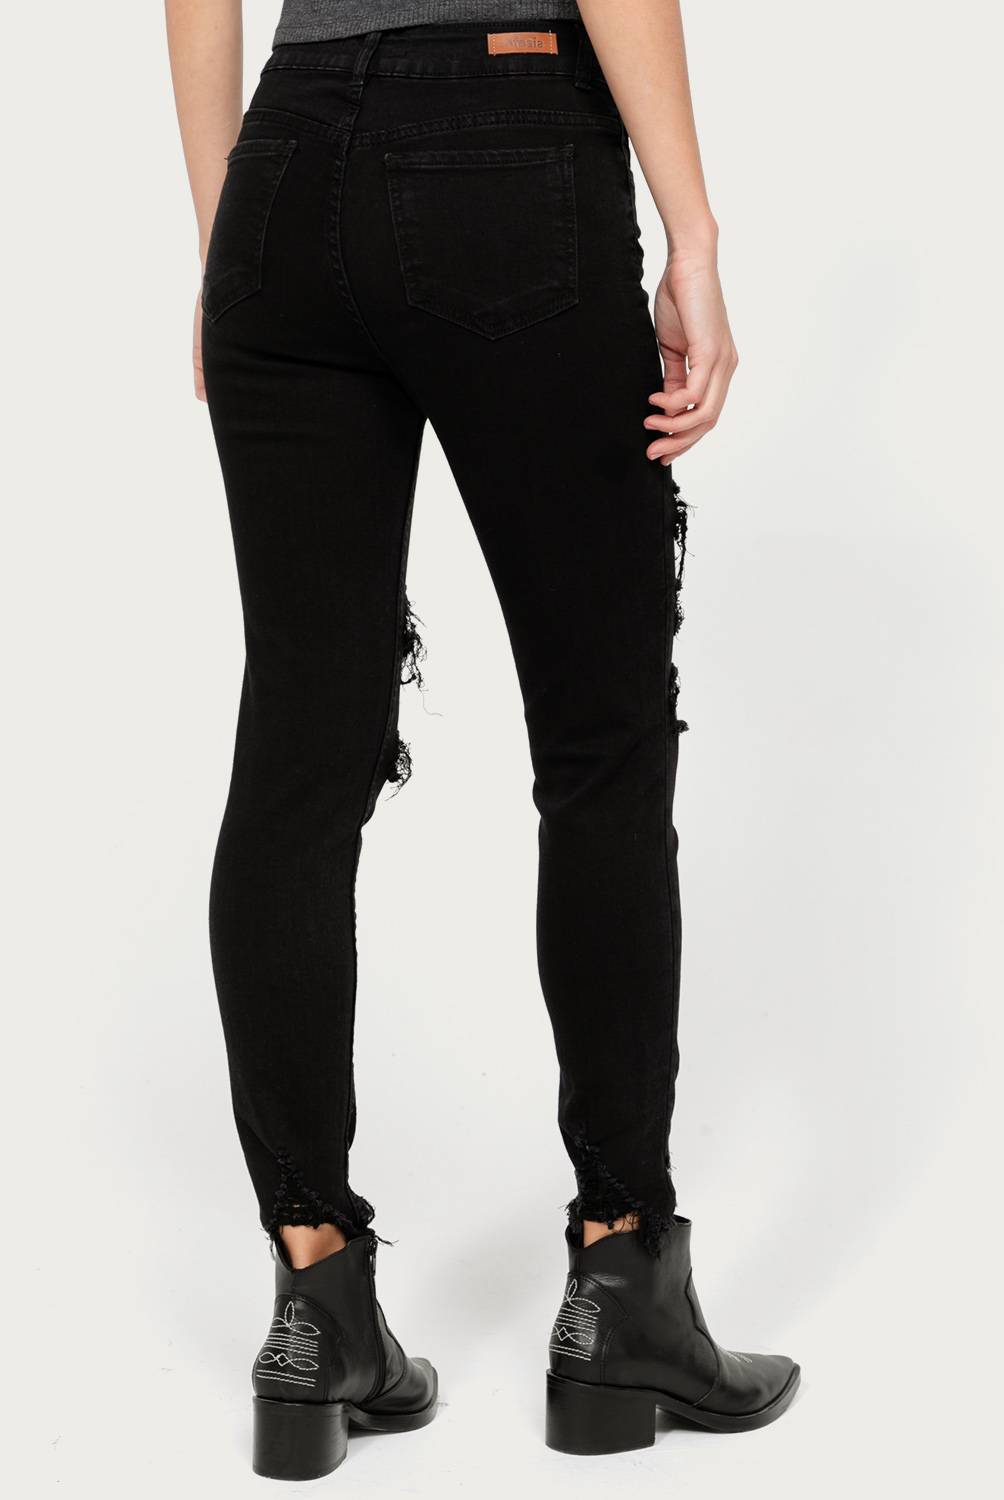 EFESIS - Jeans Skinny Tiro Alto Mujer